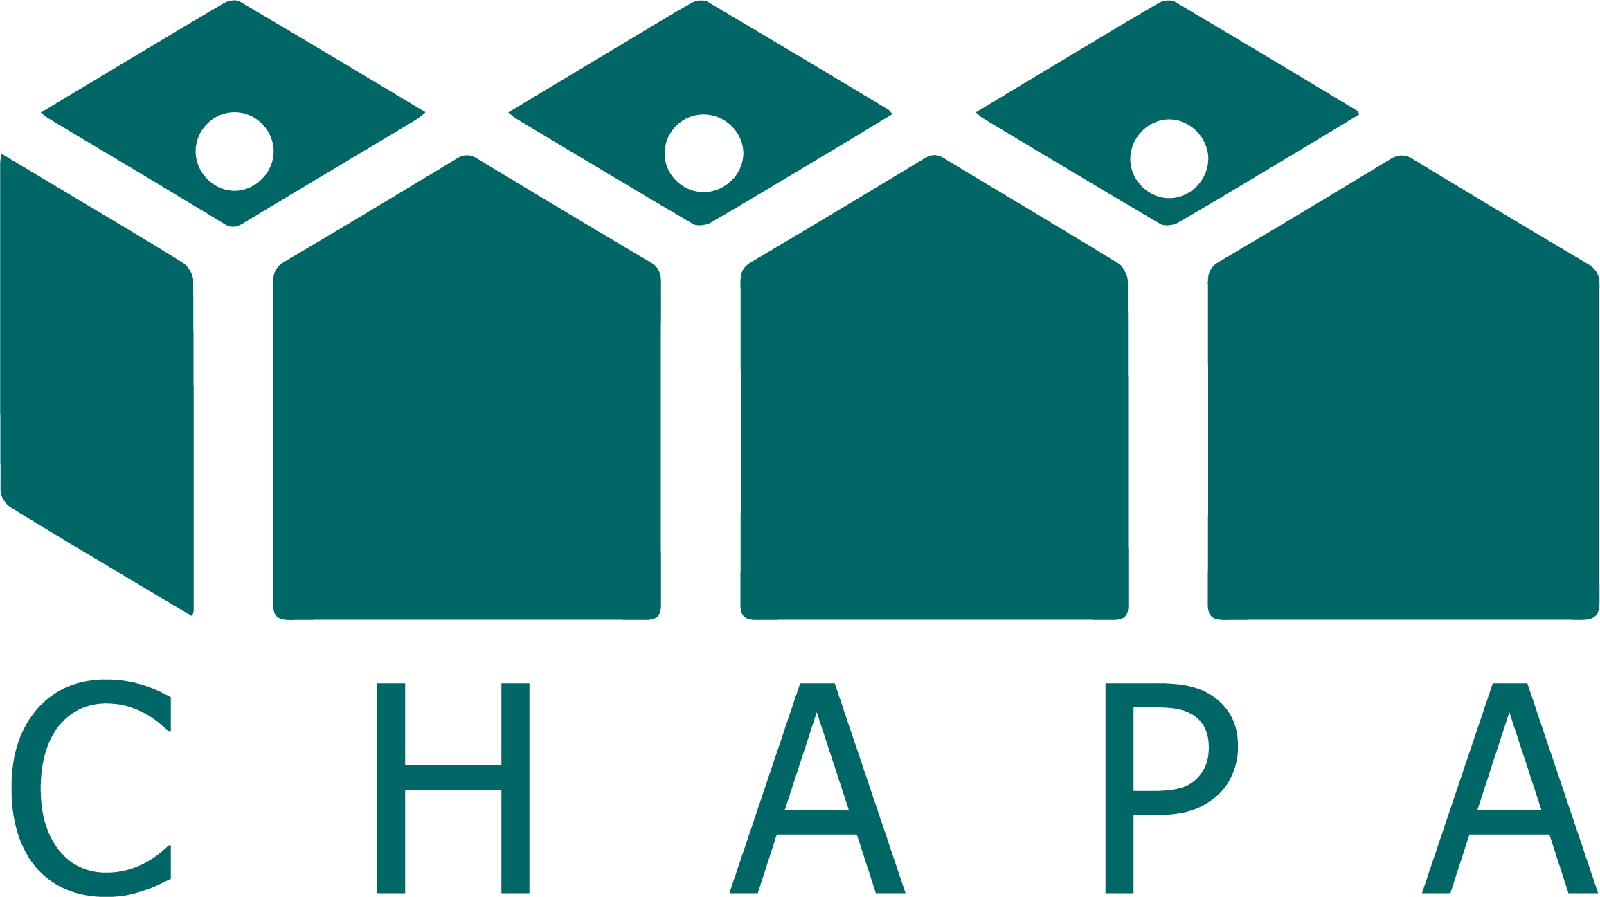 CHAPA logo